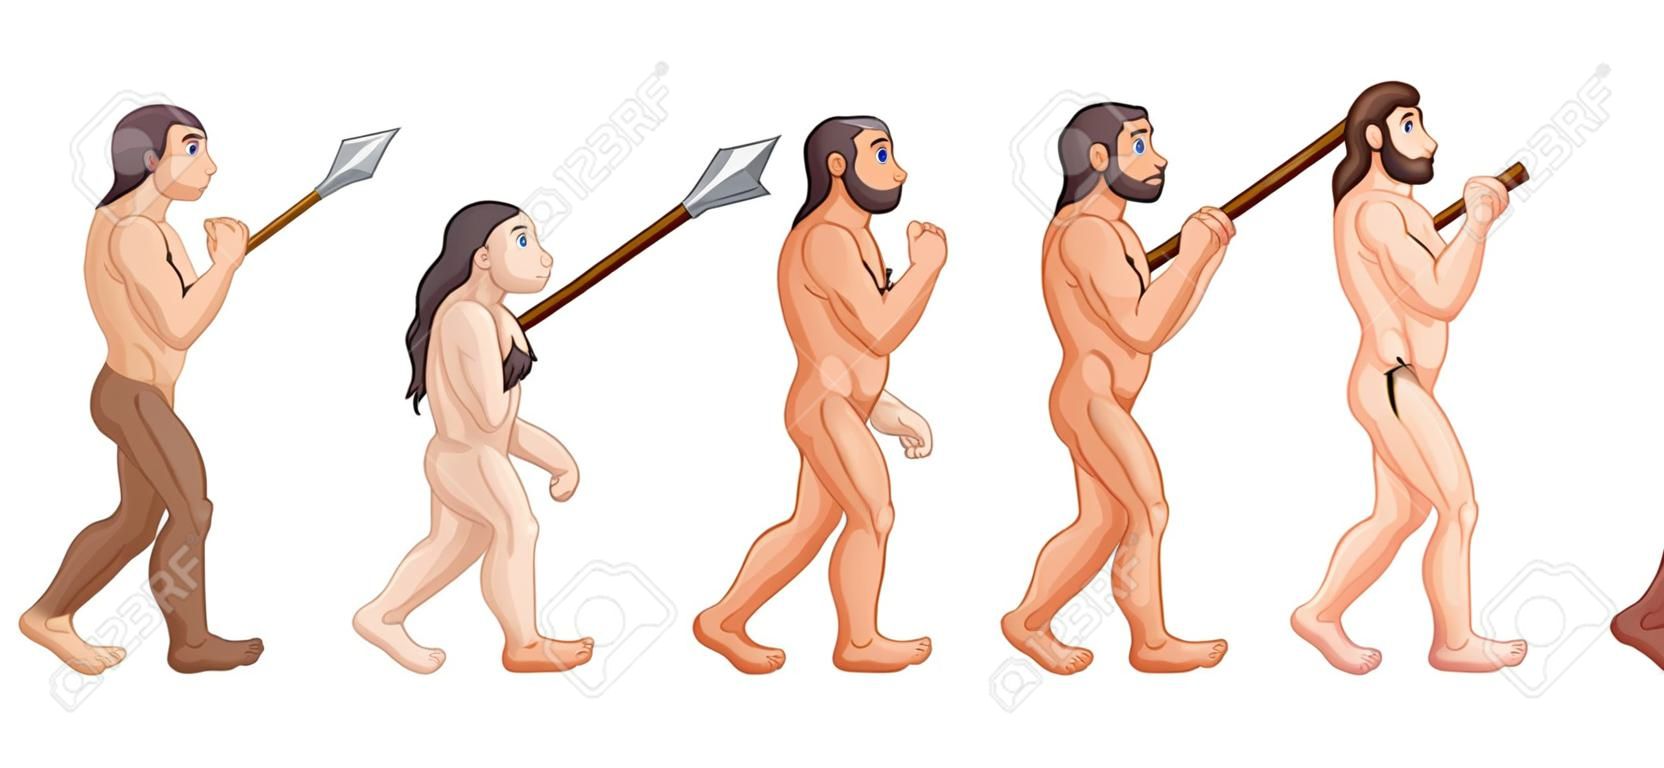 Vector illustration of Cartoon human evolution